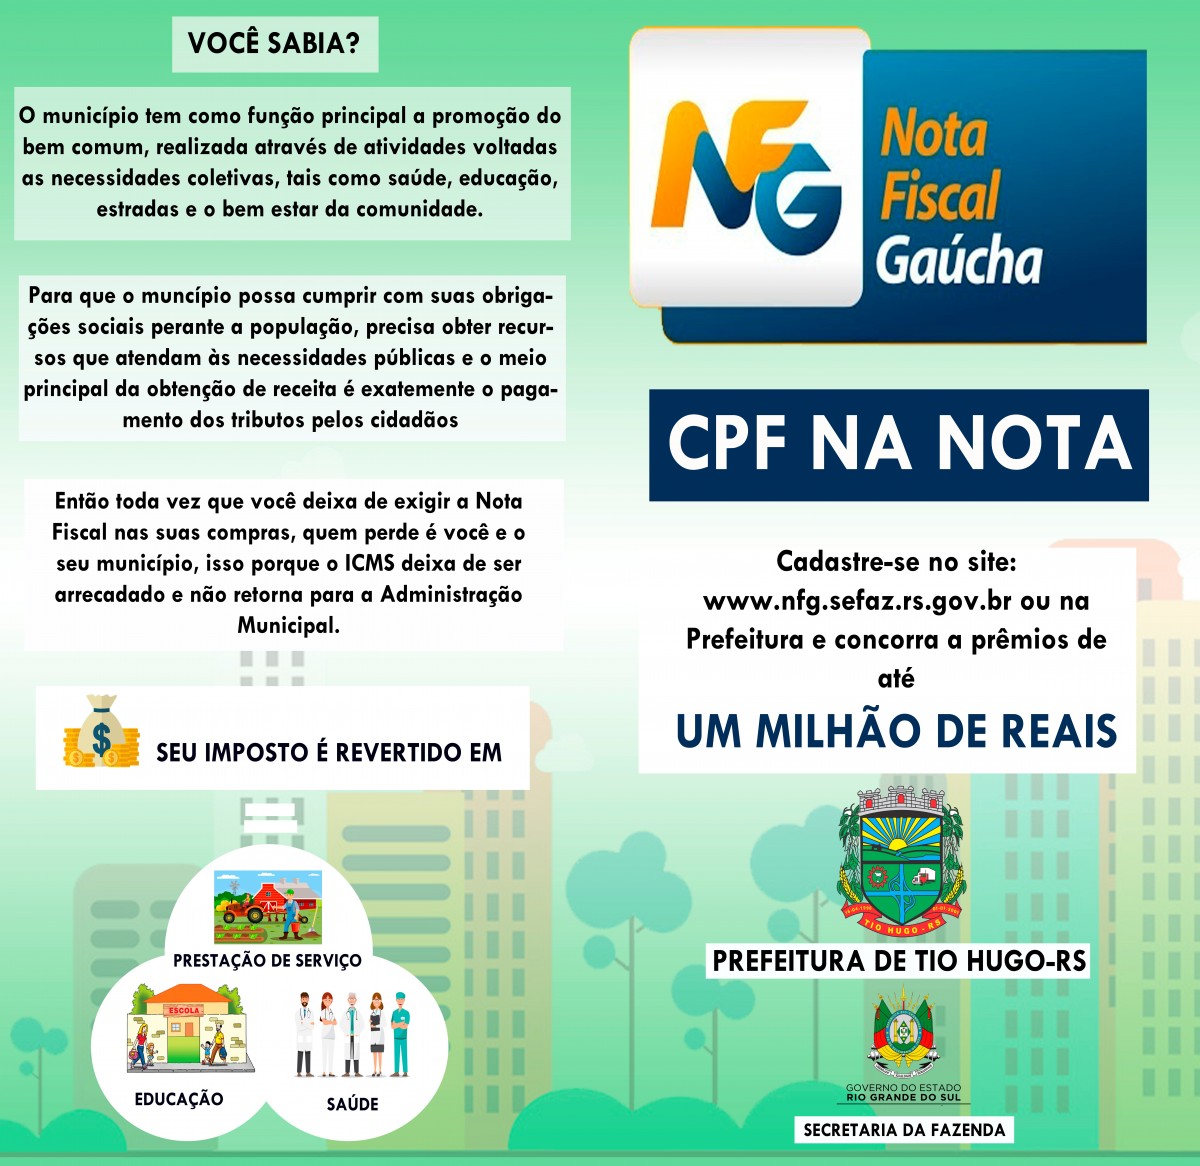 Nota Fiscal Gaúcha: Município de Tio Hugo irá sortear prêmios de R$ 250,00, R$ 150,00 e R$ 100,00 todos os meses